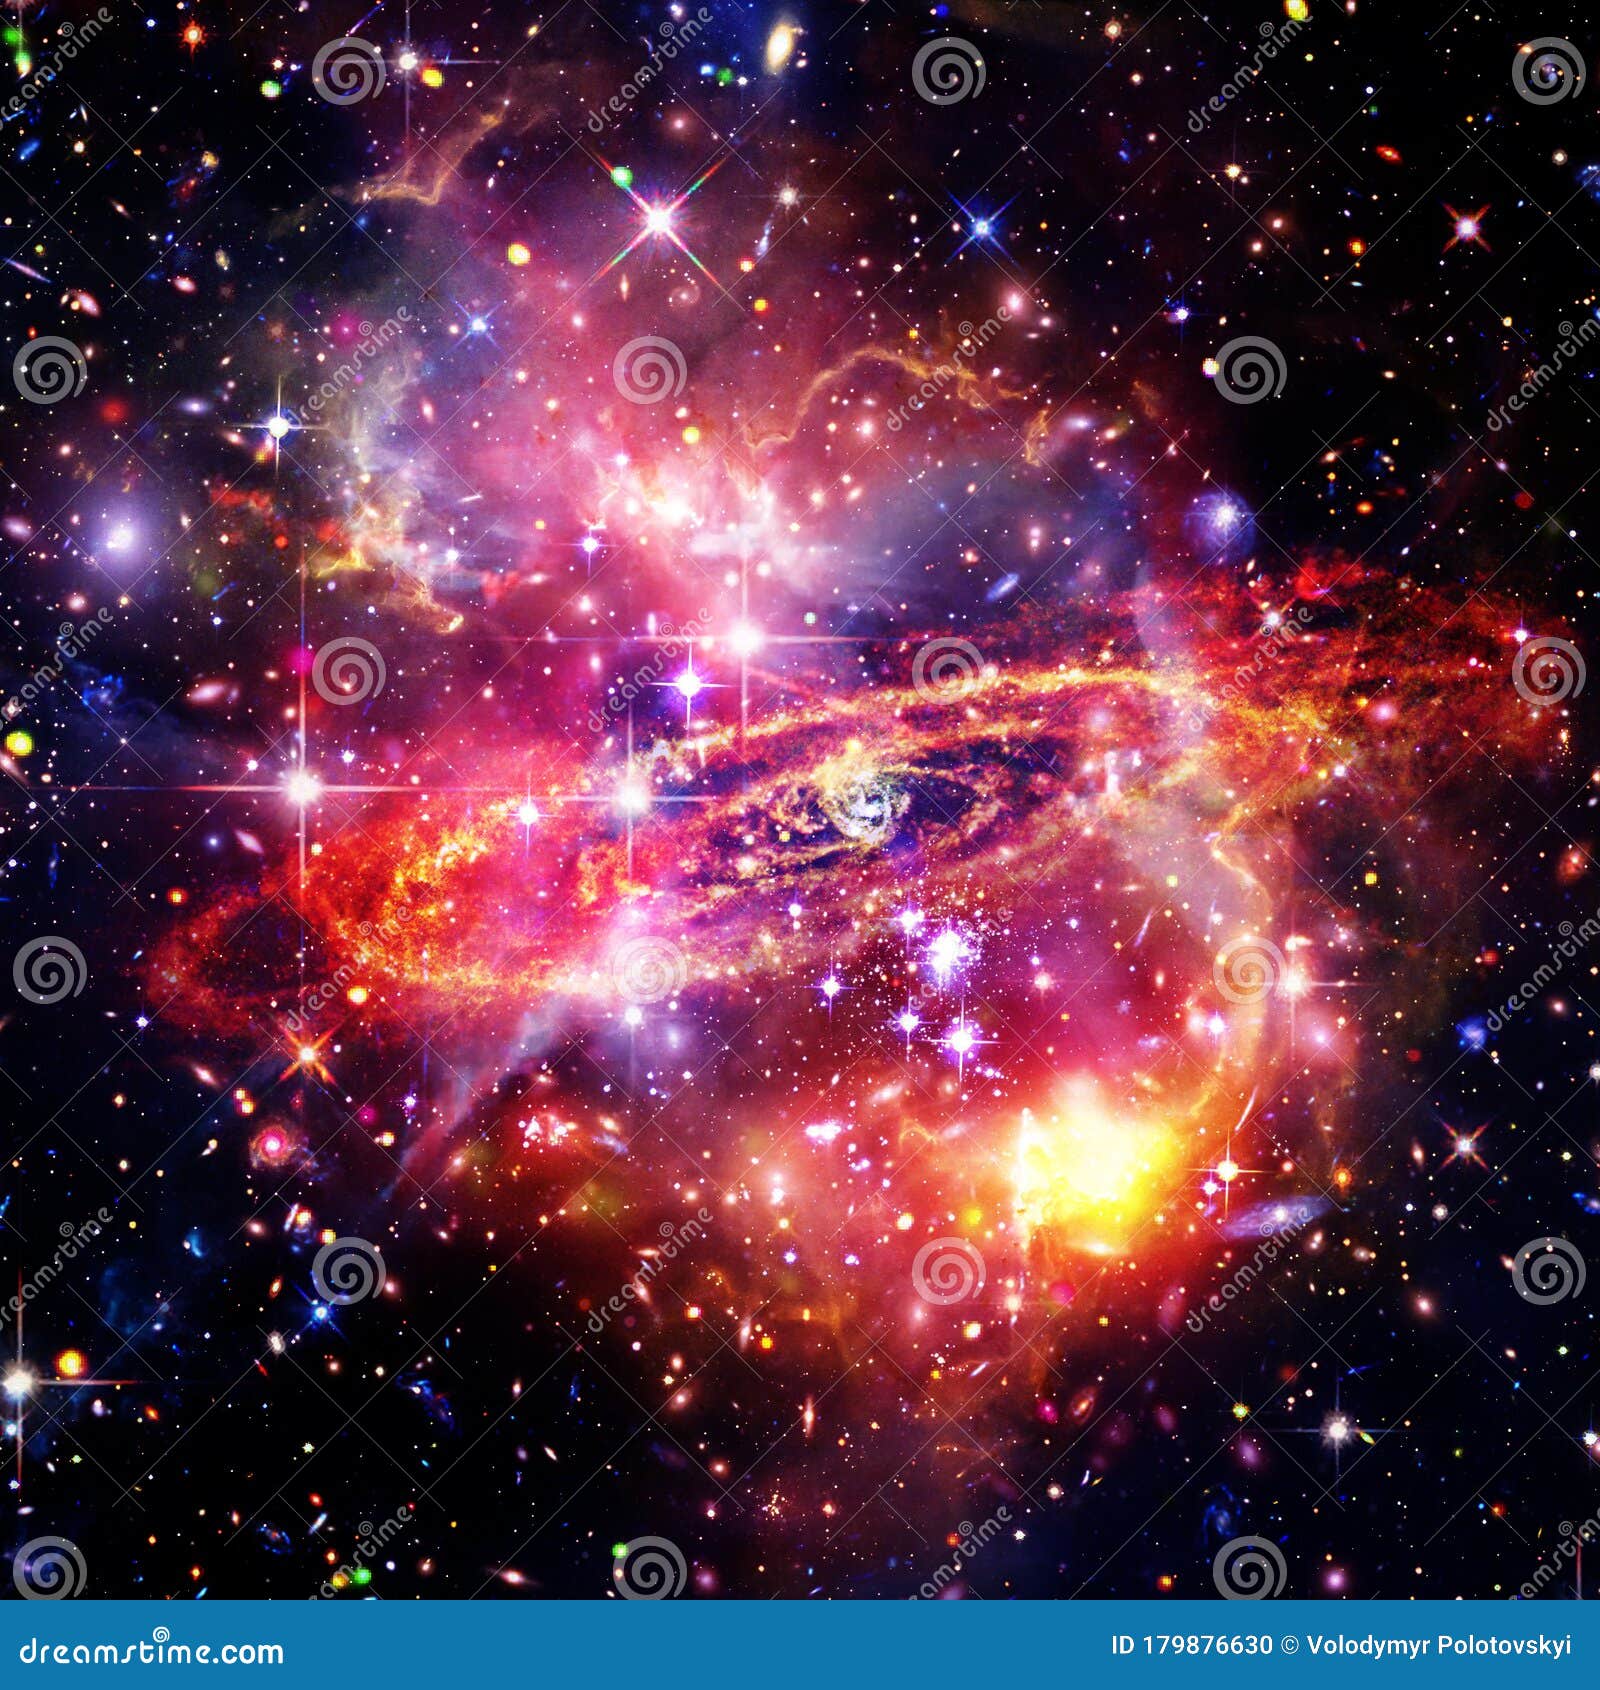 Galaxy: Hãy chiêm ngưỡng hình ảnh độc đáo về thiên hà rực rỡ với các ngôi sao lấp lánh trên bầu trời đêm. Để choáng ngợp với sự đa dạng và nét đẹp của vũ trụ.